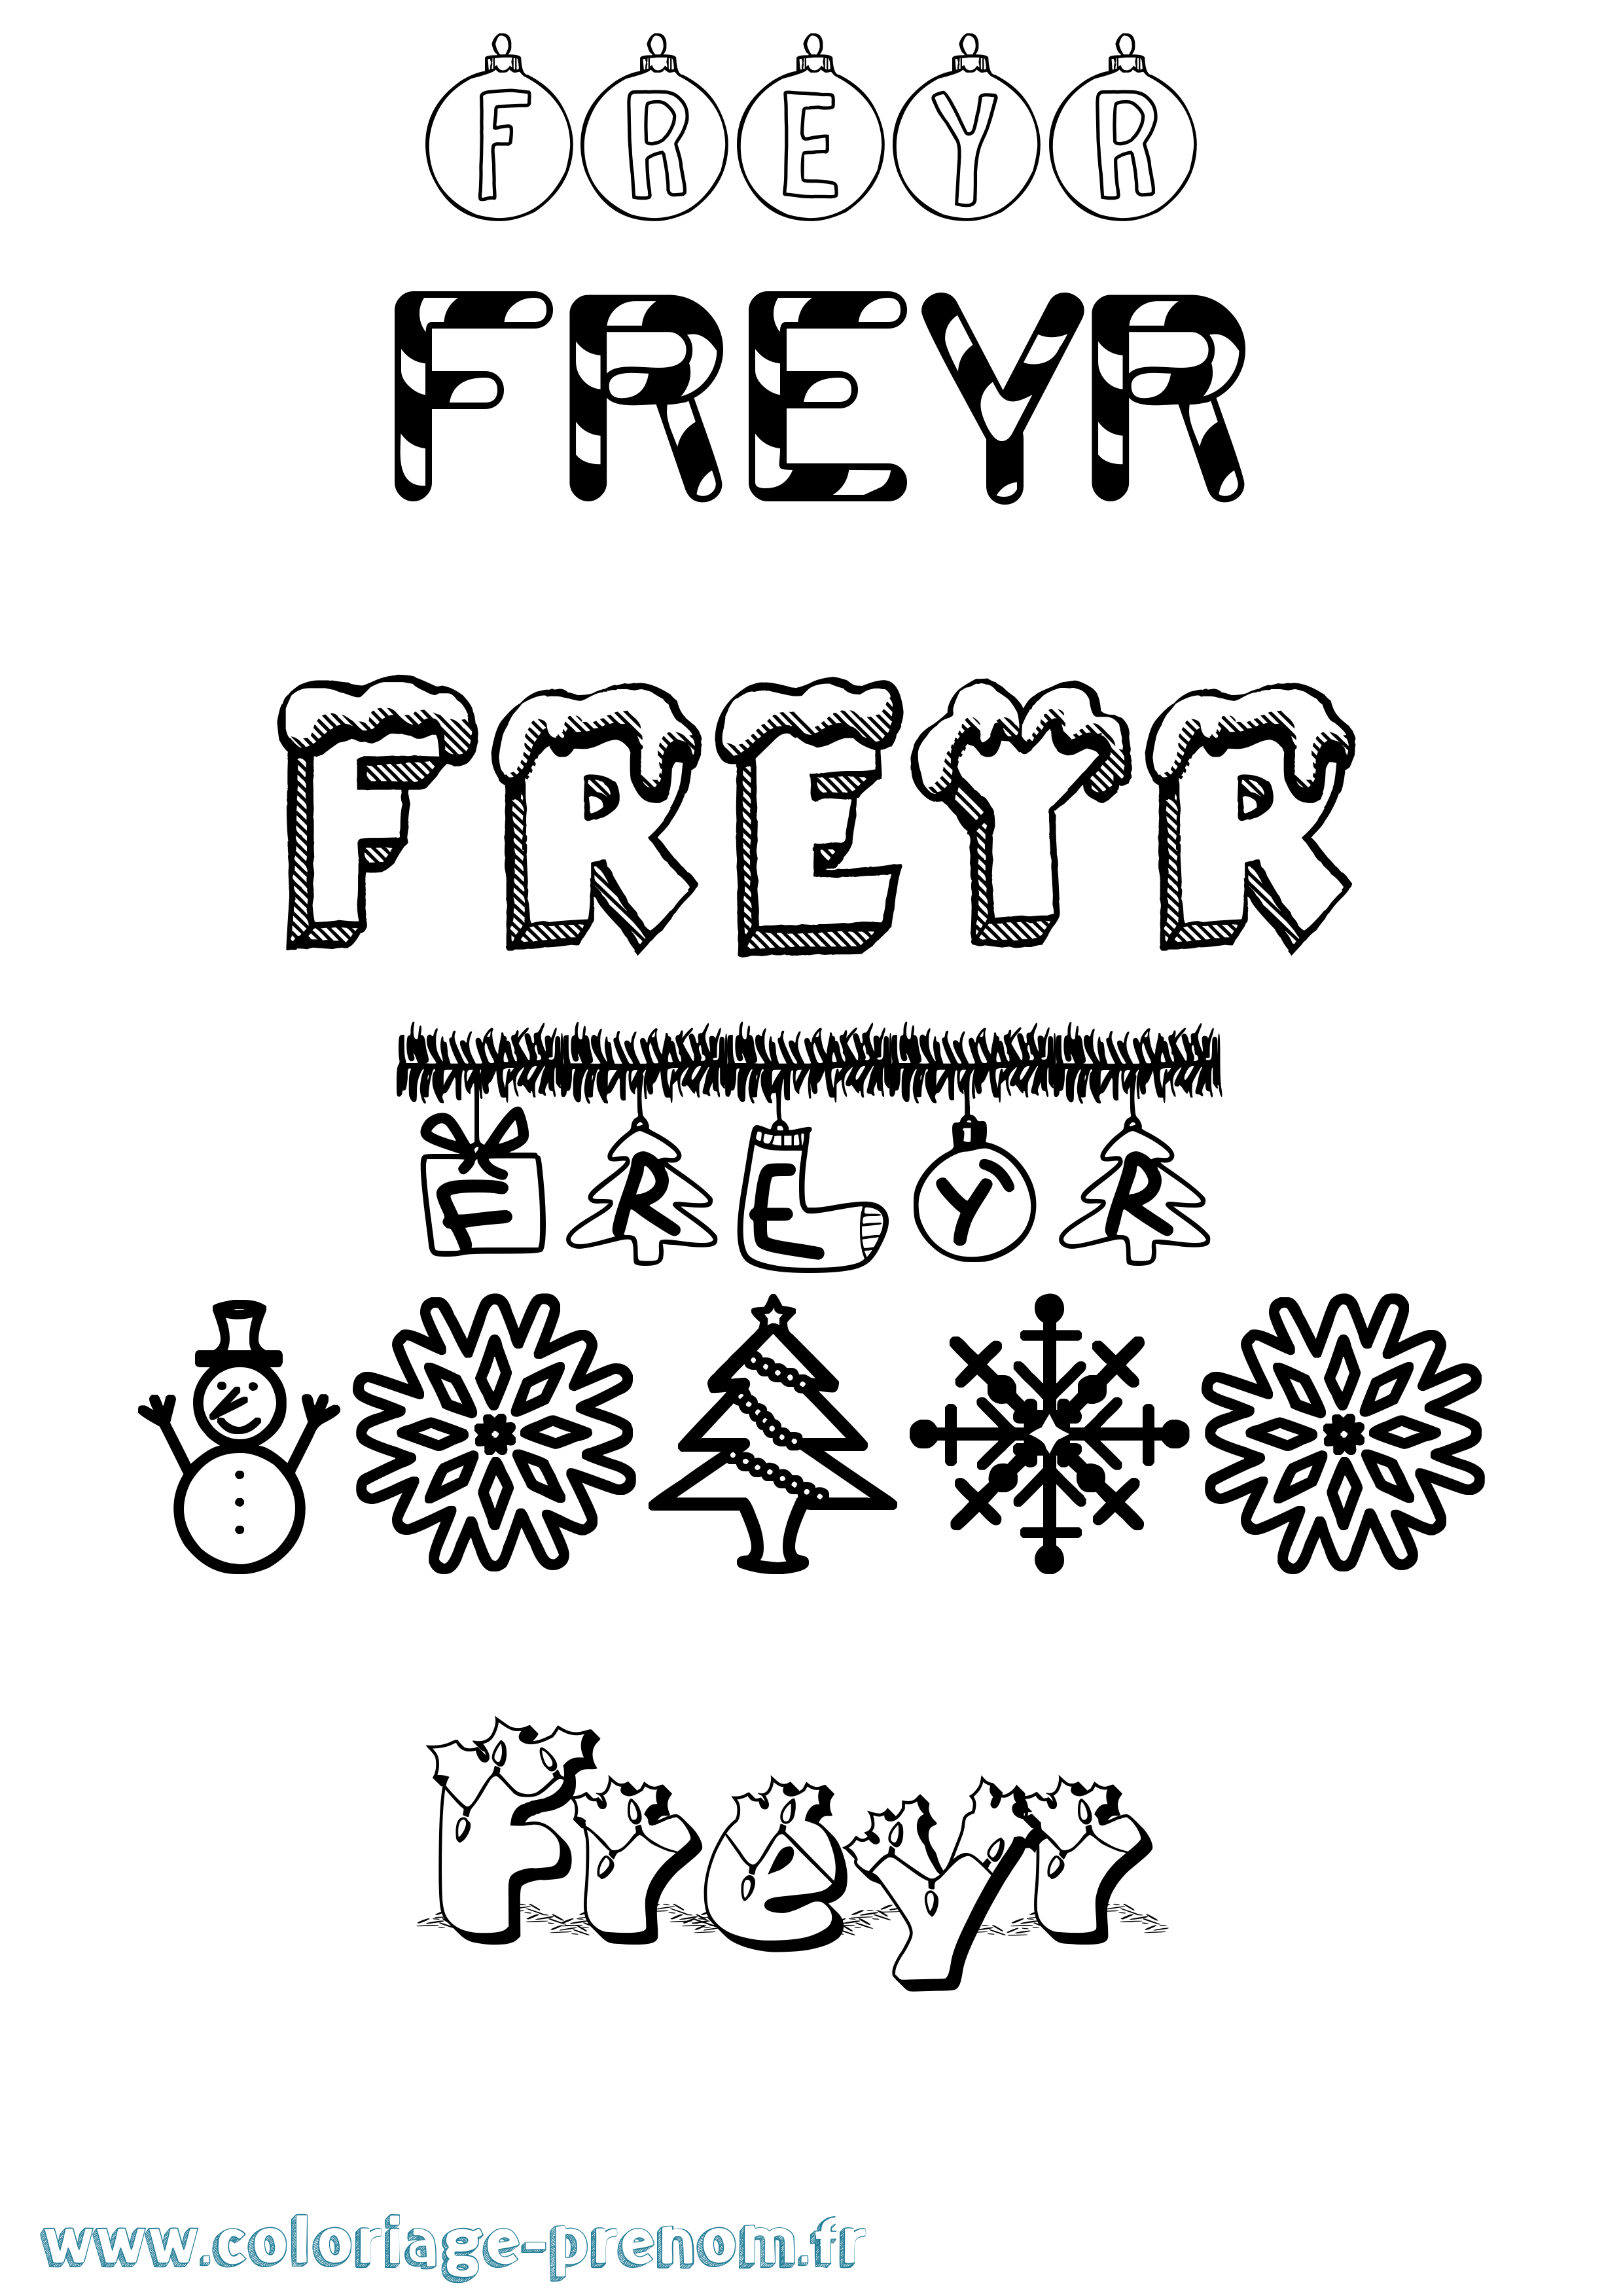 Coloriage prénom Freyr Noël